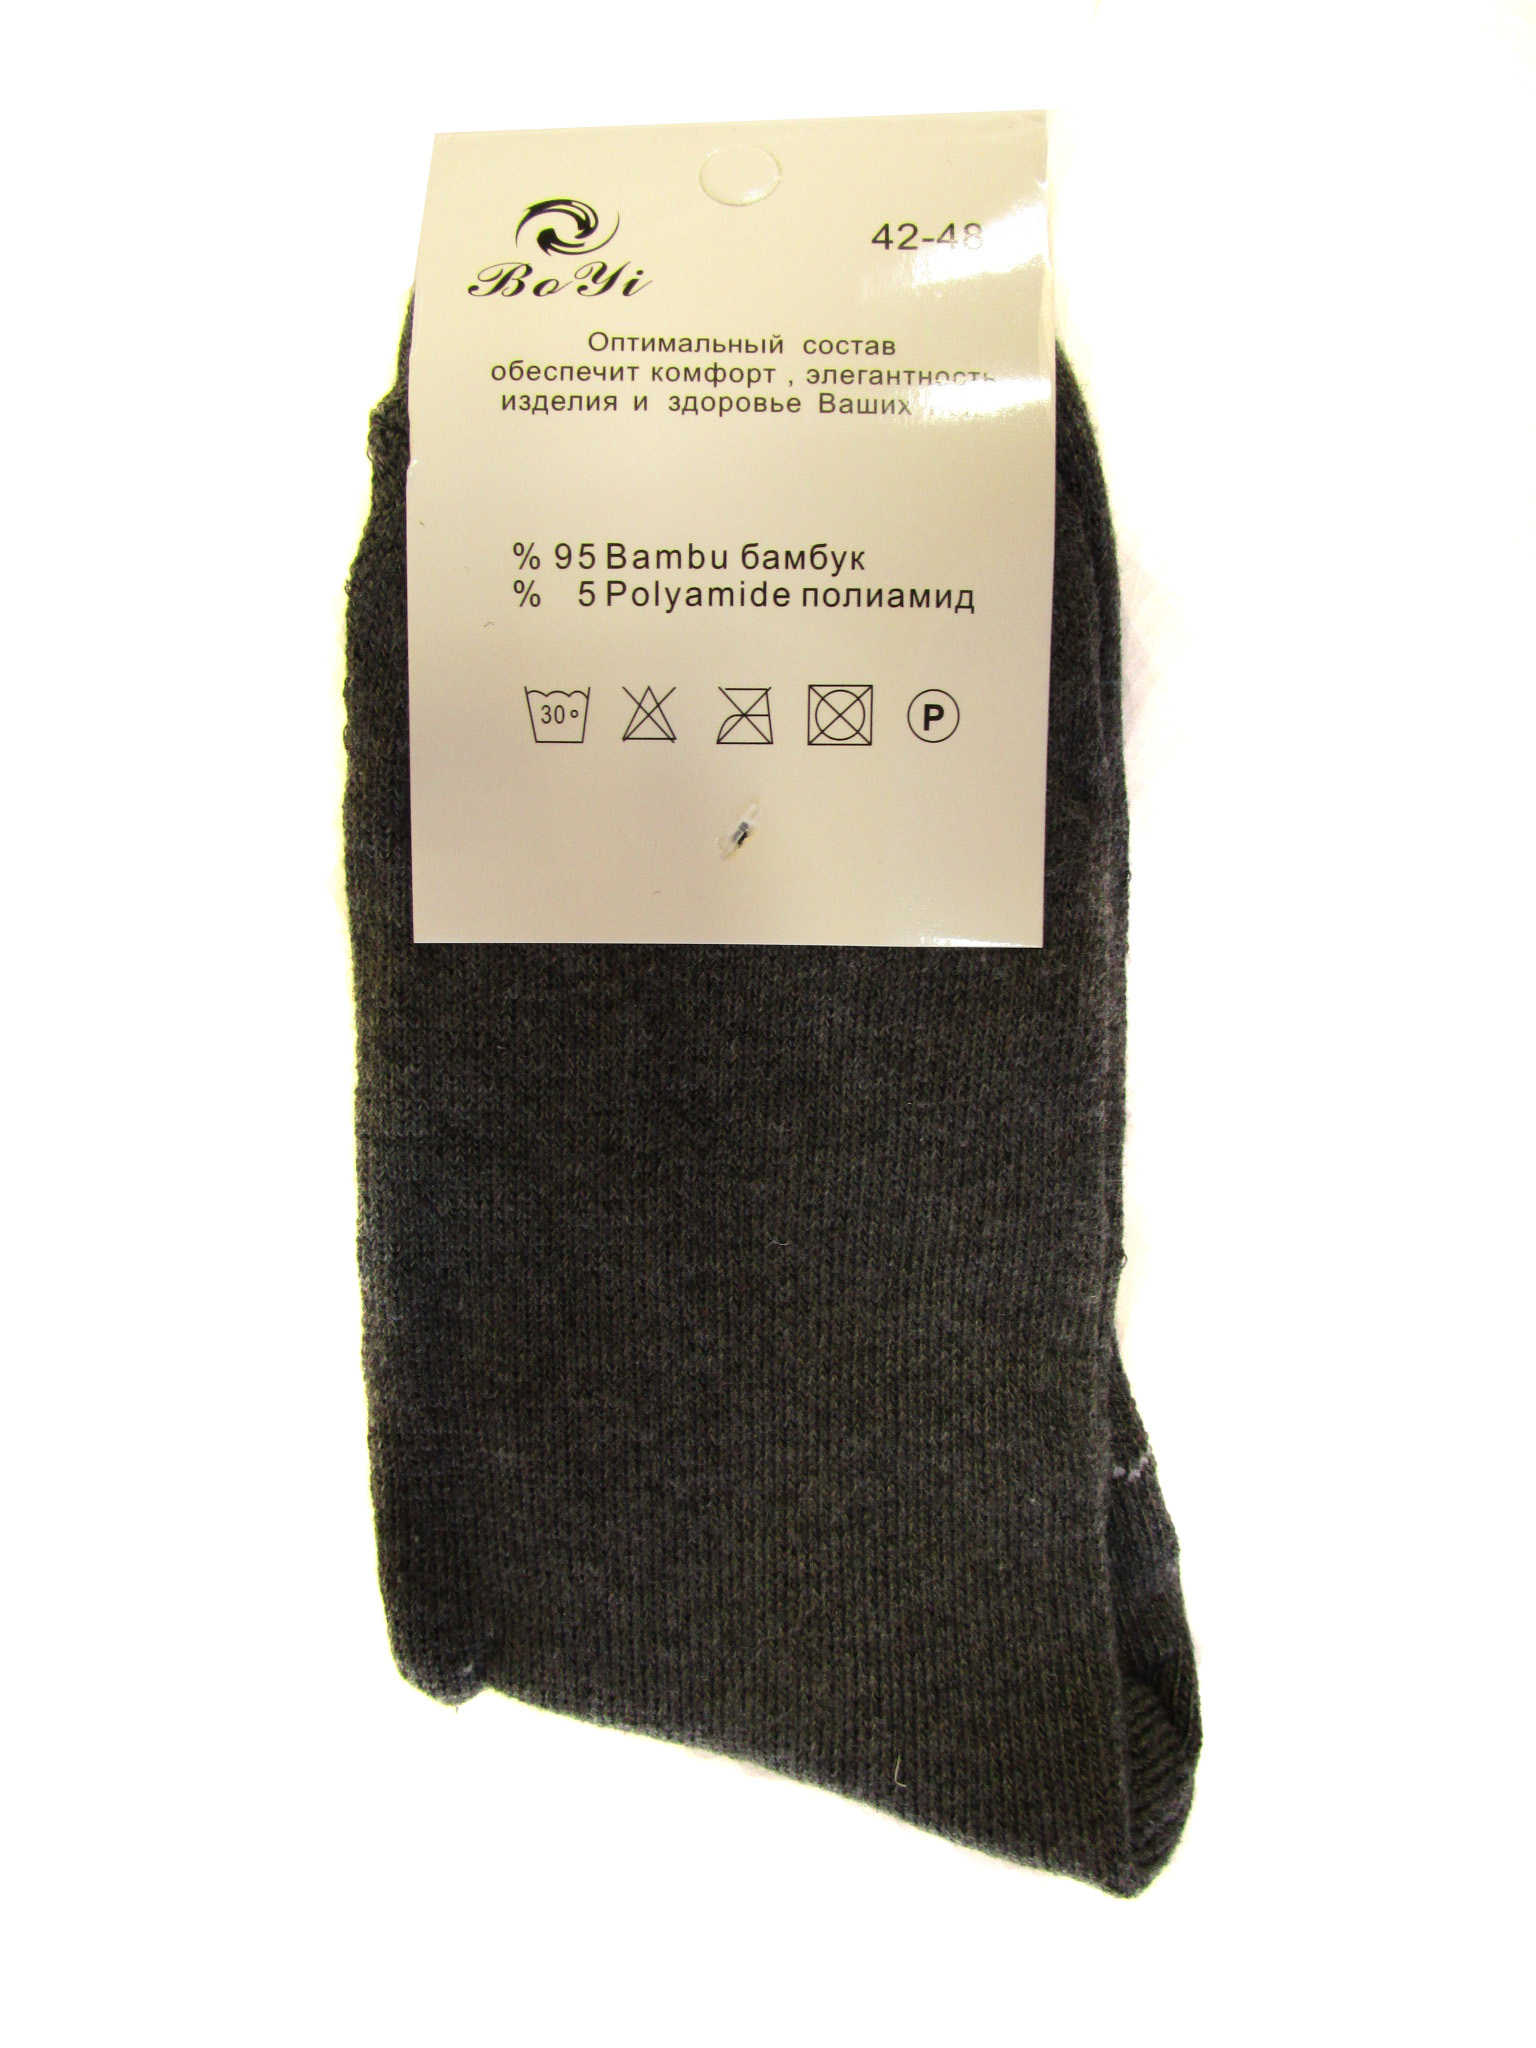 Мужские носки теплые "Boyi" (арт.ml-6)